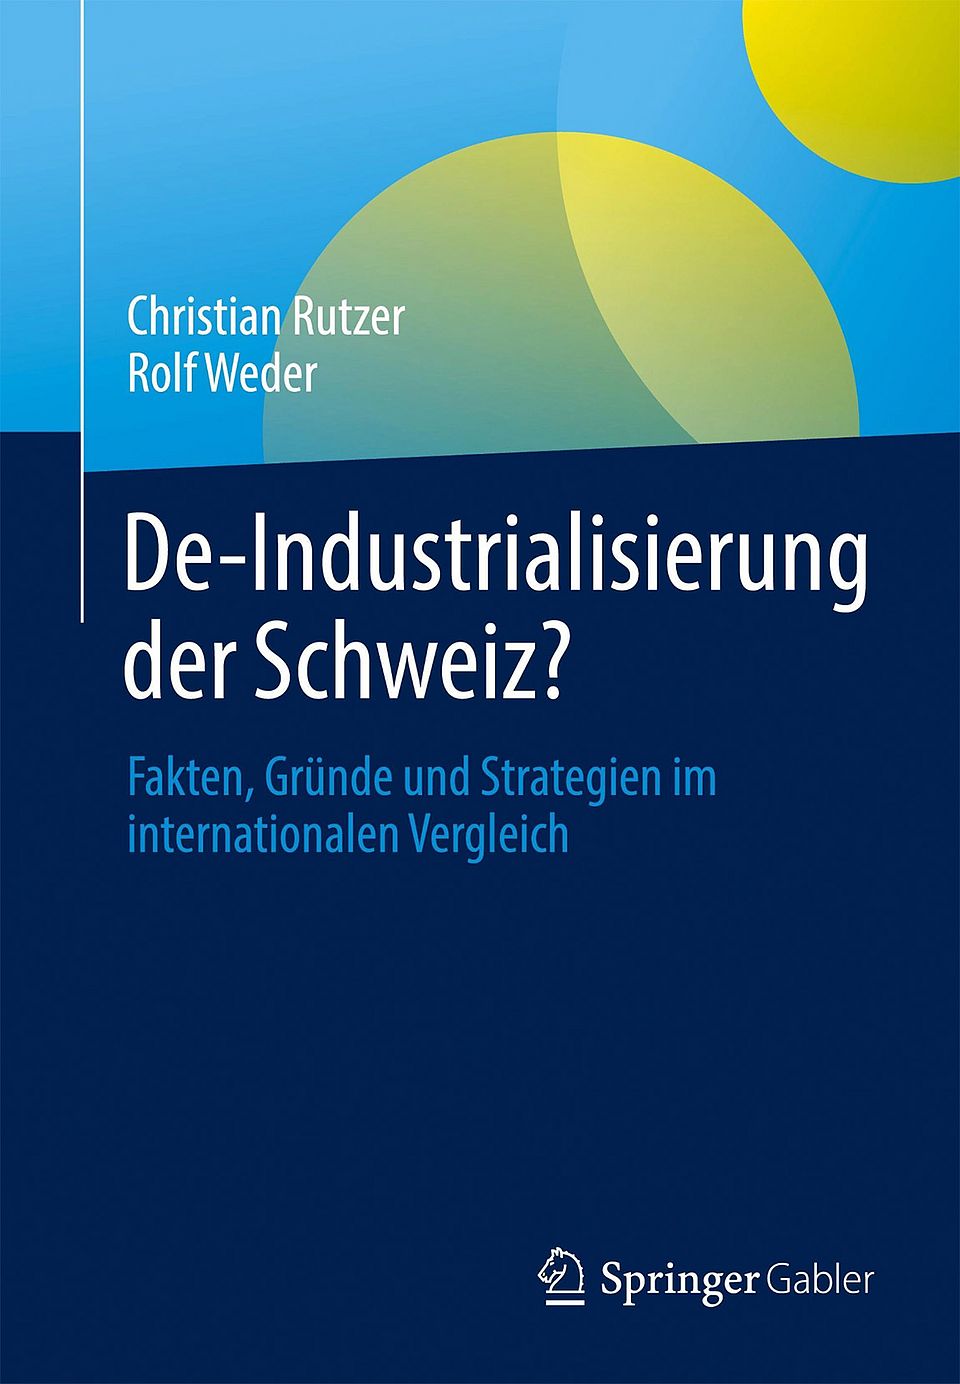 De-Industrialisierung der Schweiz? Fakten, Gründe und Strategien im internationalen Vergleich